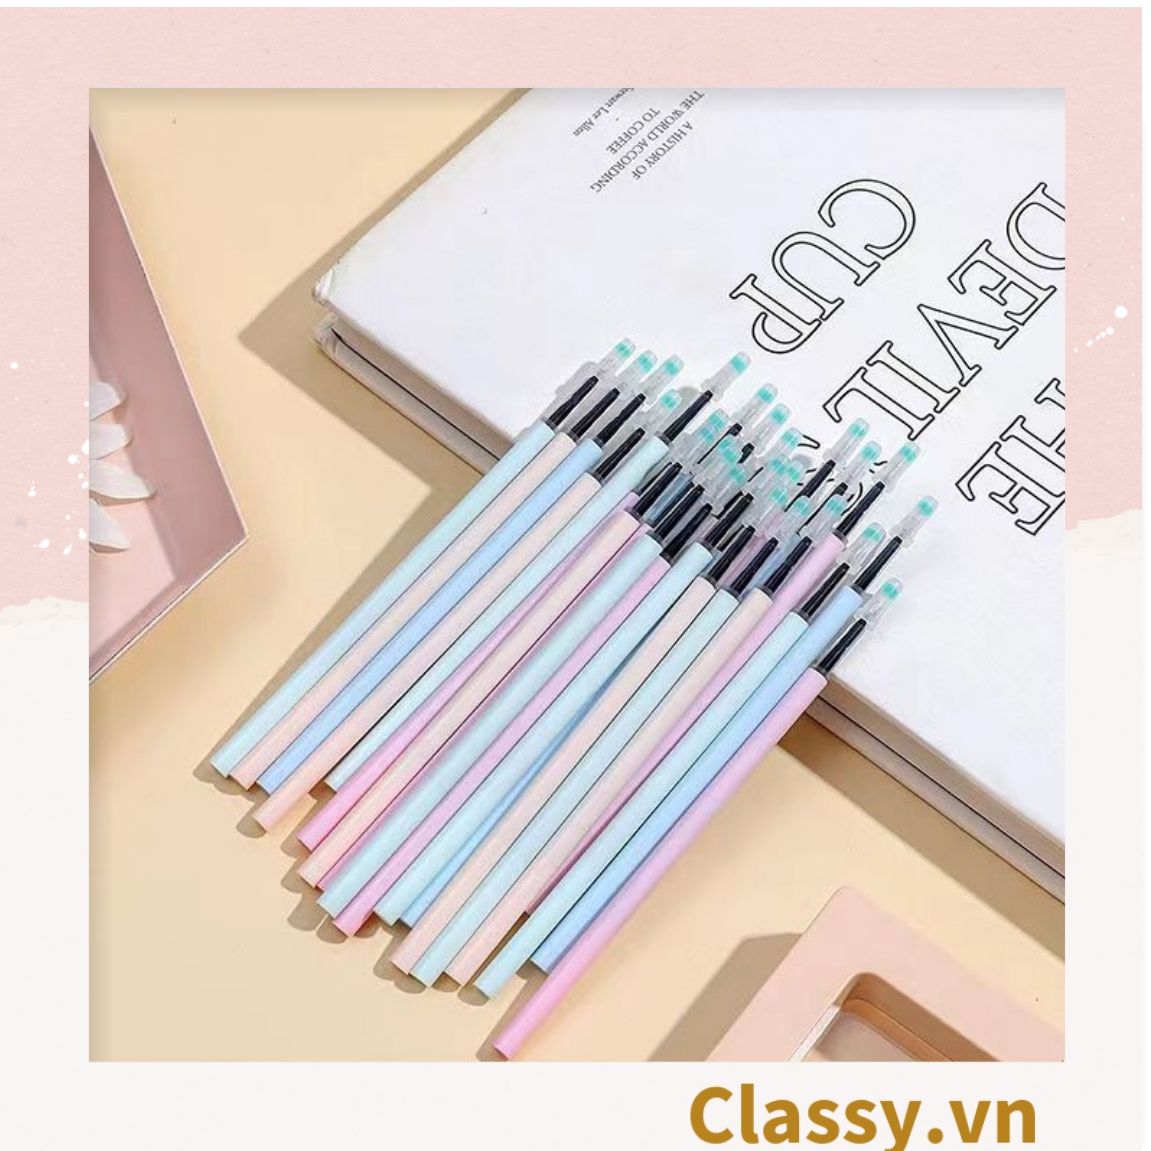  Classy Túi 20 ruột bút màu ngẫu nhiên, bút gel, bút mực màu đều, đậm, nét PK1516 